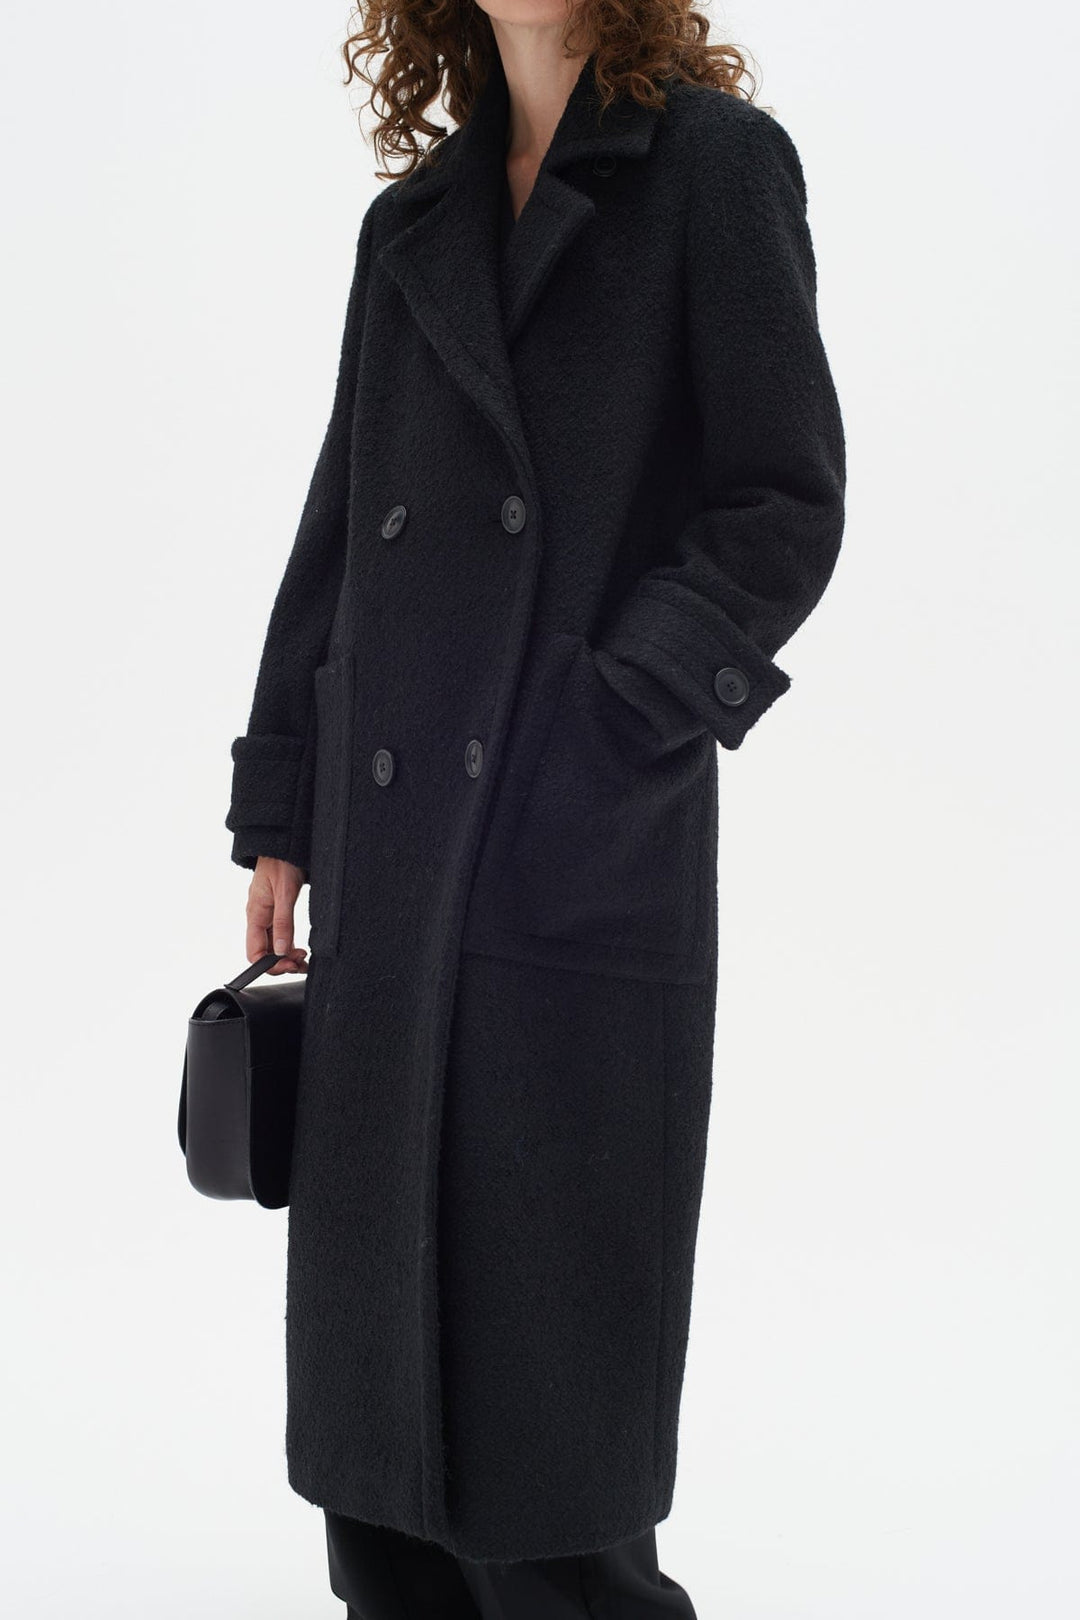 Percyiw Coat Black | Yttertøy | Smuk - Dameklær på nett